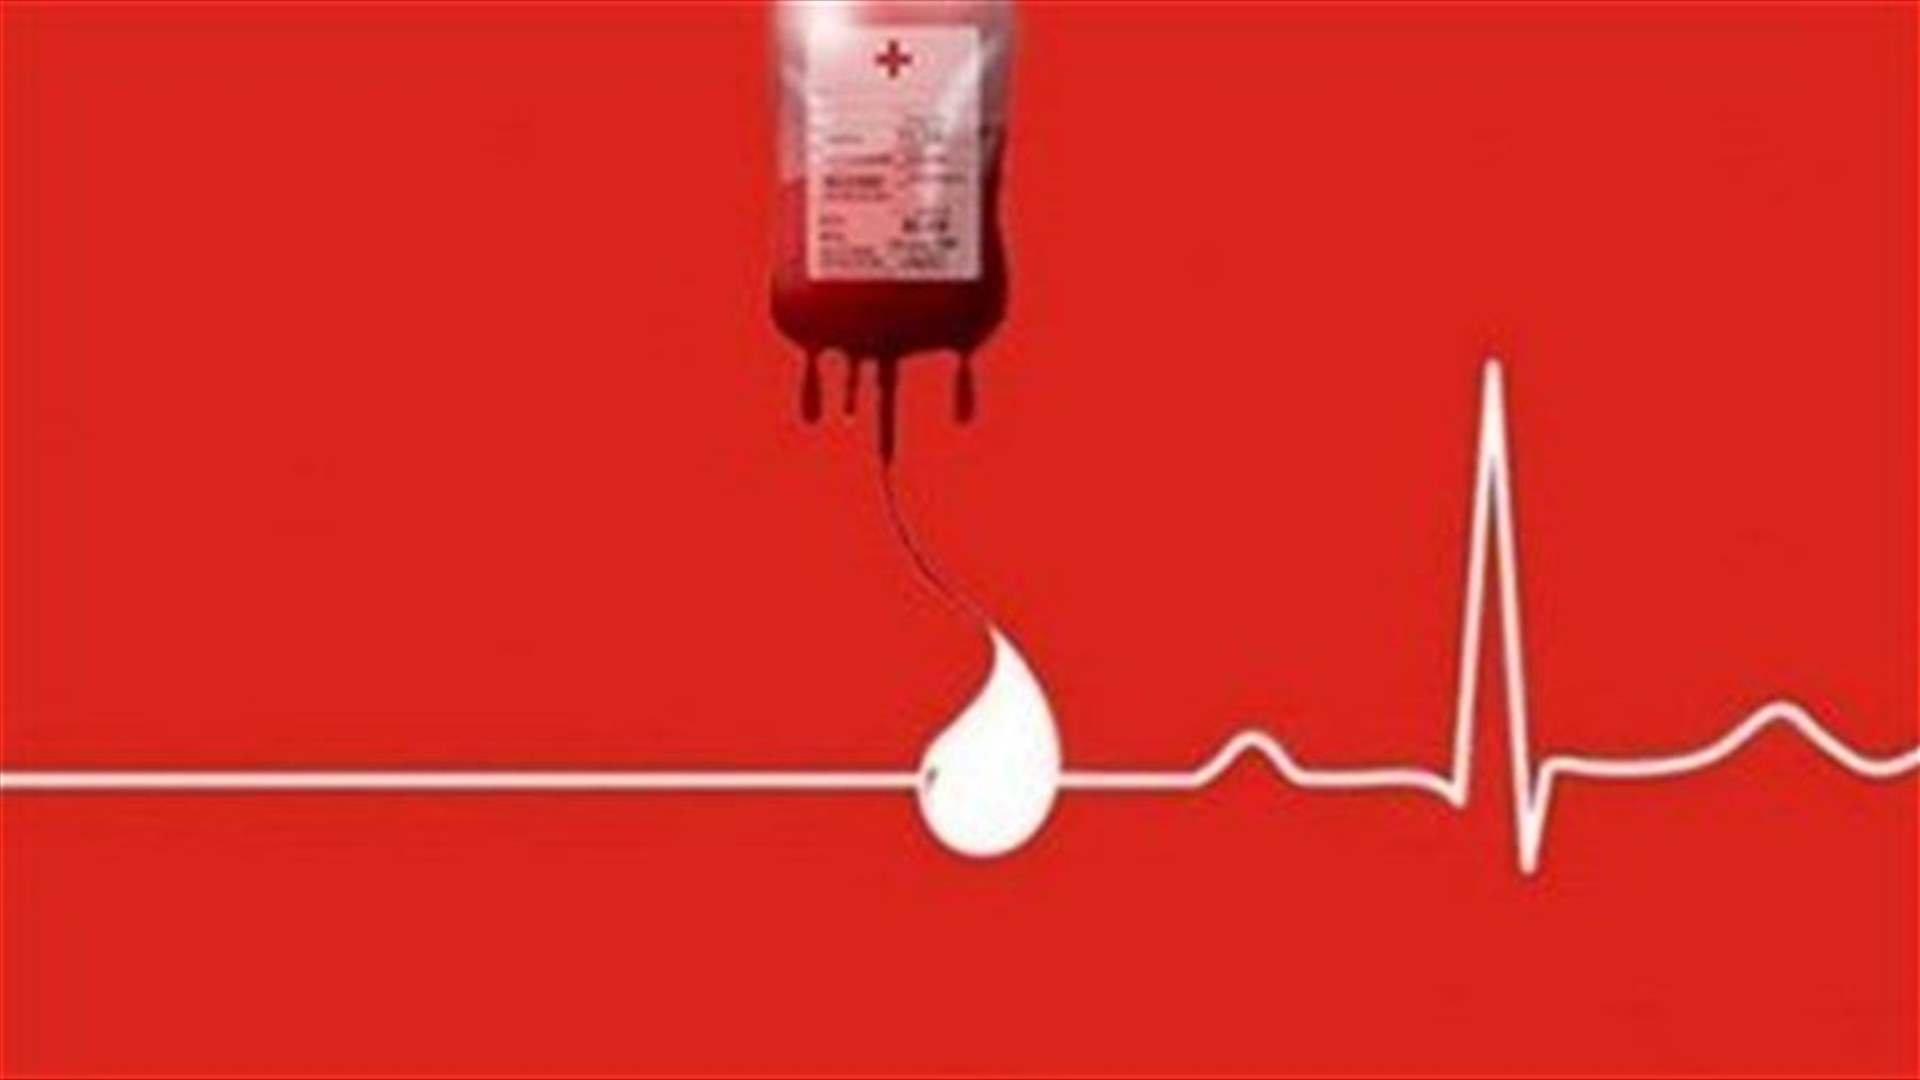 مطلوب وحدة دم من فئة AB+ في مستشفى سيدة لبنان ... للتبرع الاتصال على الرقم التالي: 71007109